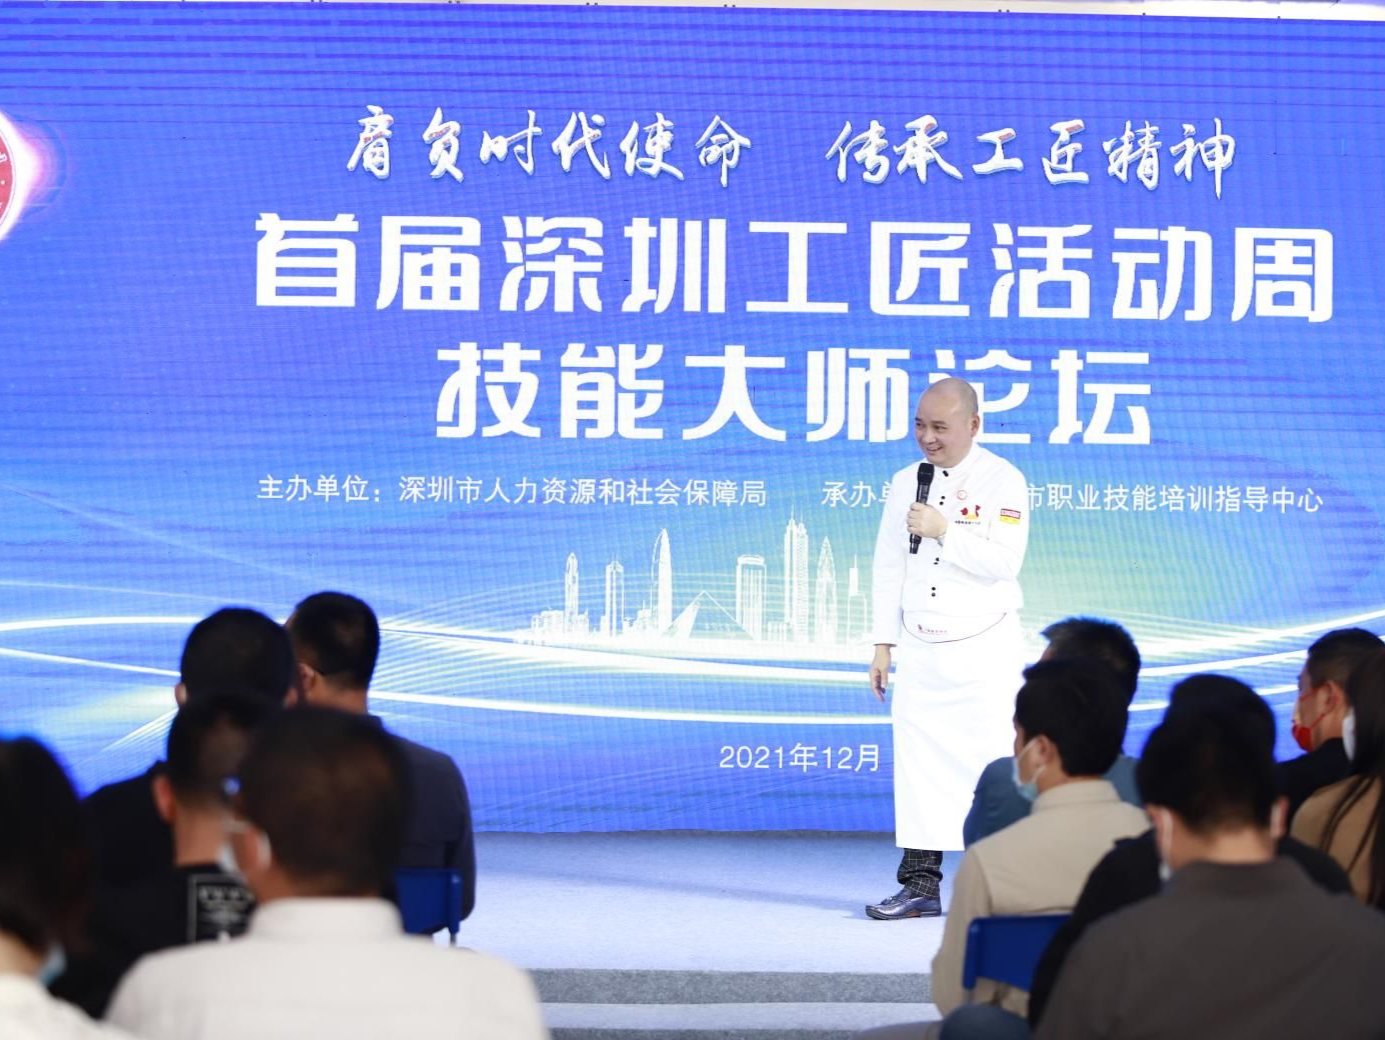 深圳市职业技能培训指导中心举办2021技能大师论坛，开展高技能人才培训达20万人次